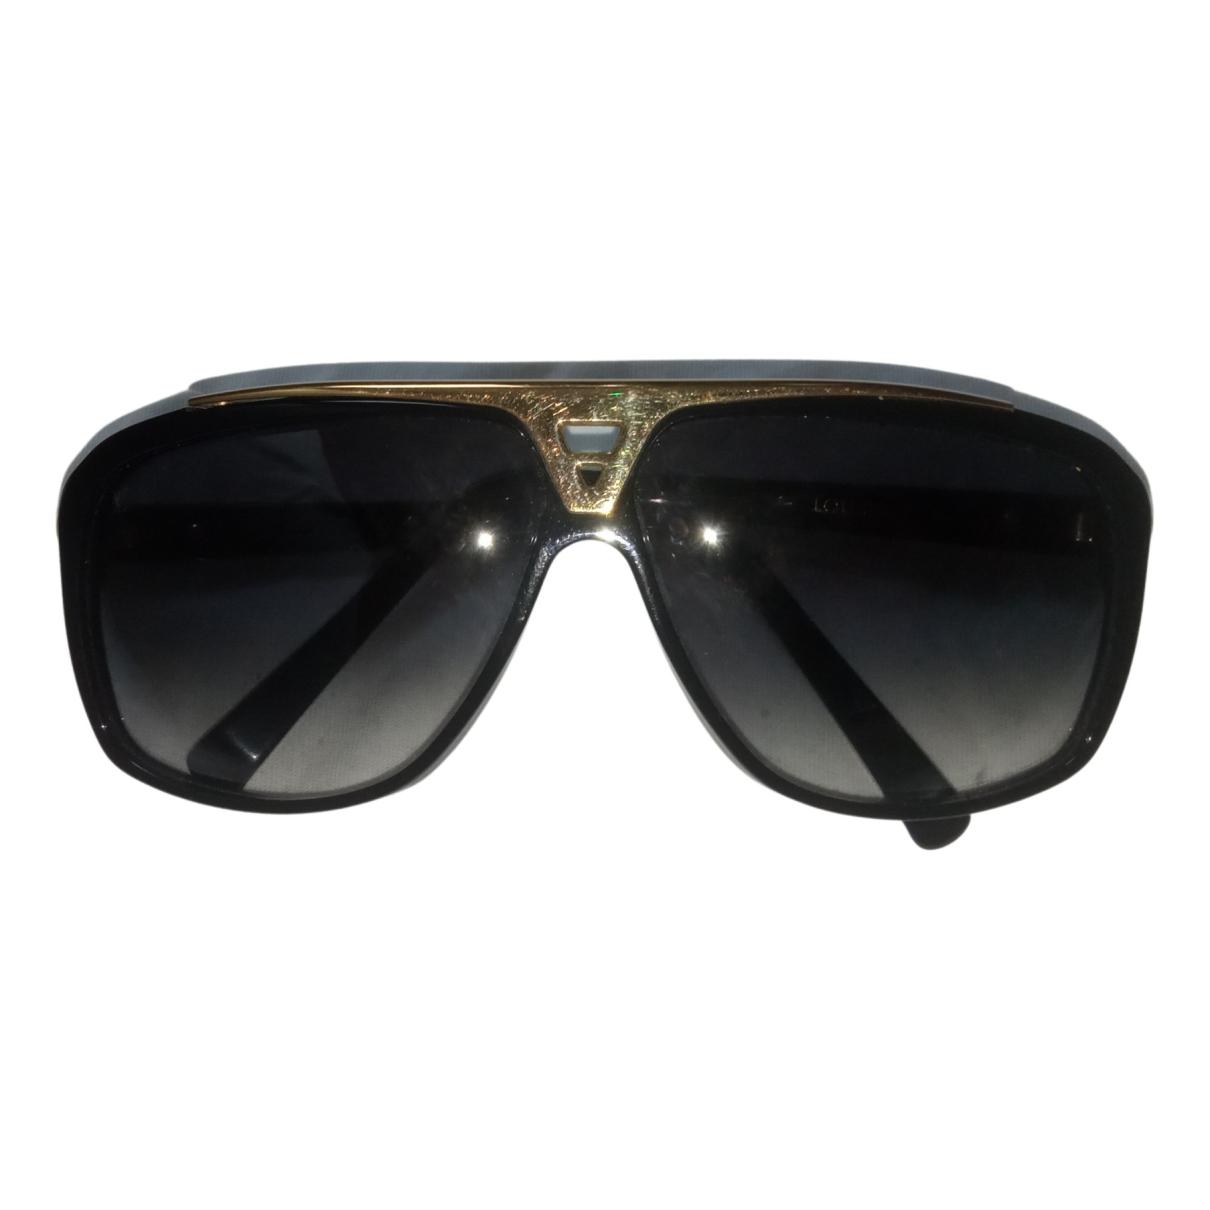 White Louis Vuitton Millionaires sunglasses